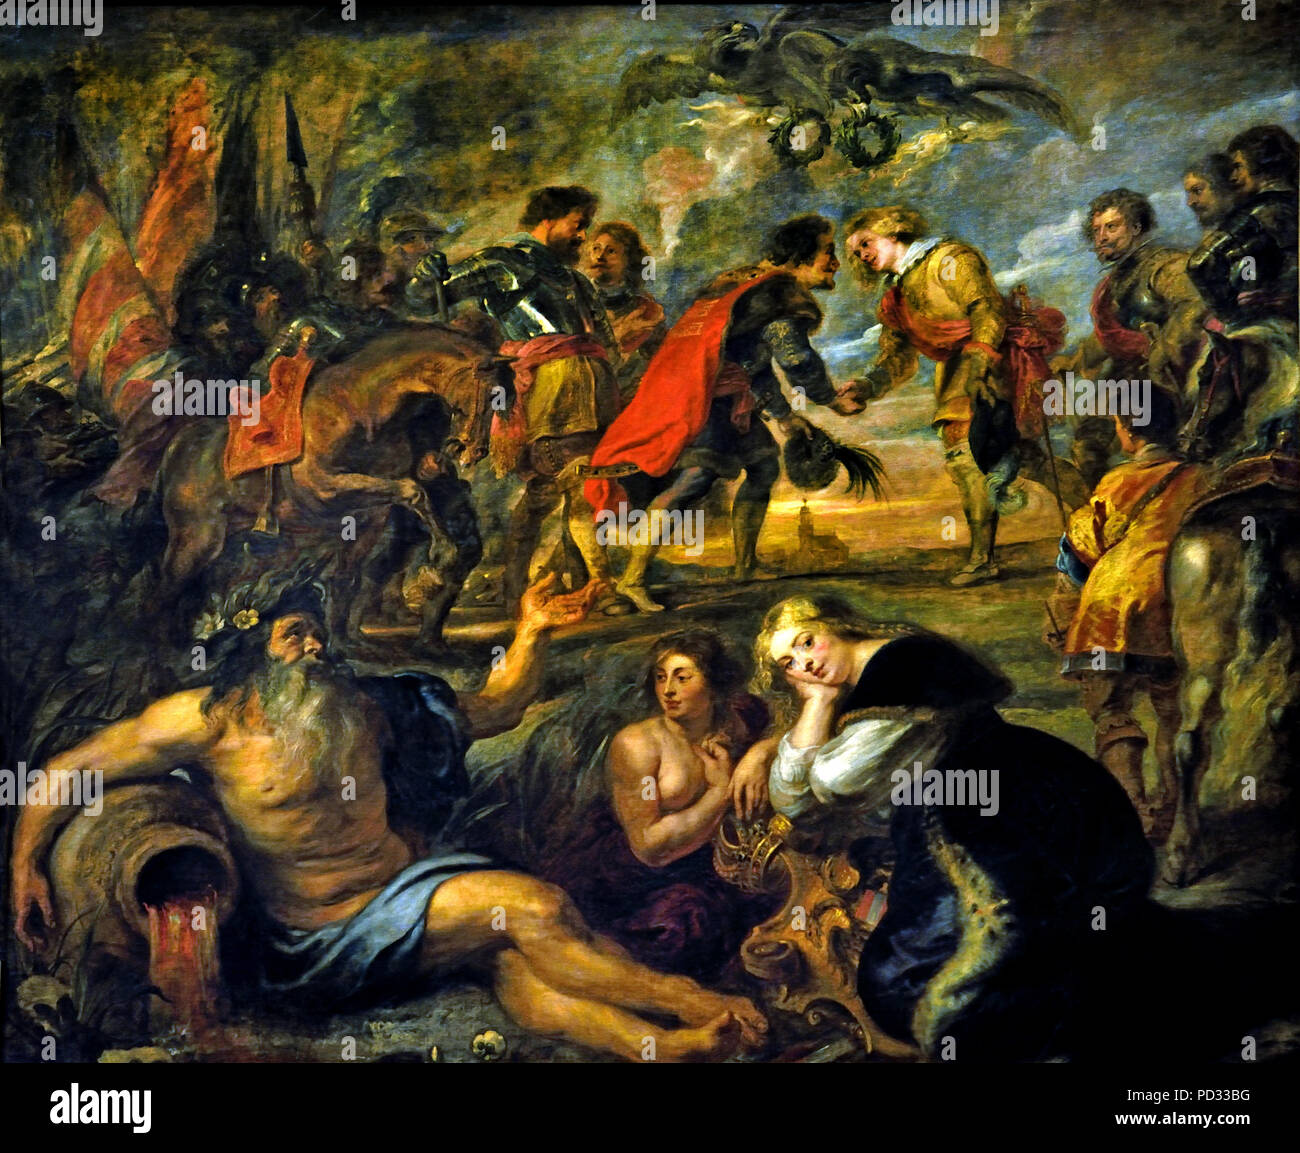 Von Peter Paul Rubens (1577 - 1640) Belgien Flandern Belgien (die Schlacht von Nördlingen 1634 während des Dreißigjährigen Krieges, der Römisch-katholischen Kaiserlichen Armee von 15.000 spanische Soldaten gestärkt, gewann einen vernichtenden Sieg über die protestantischen Armeen von Schweden und ihre Verbündeten German-Protestant (Heilbronn Alliance). ) Stockfoto